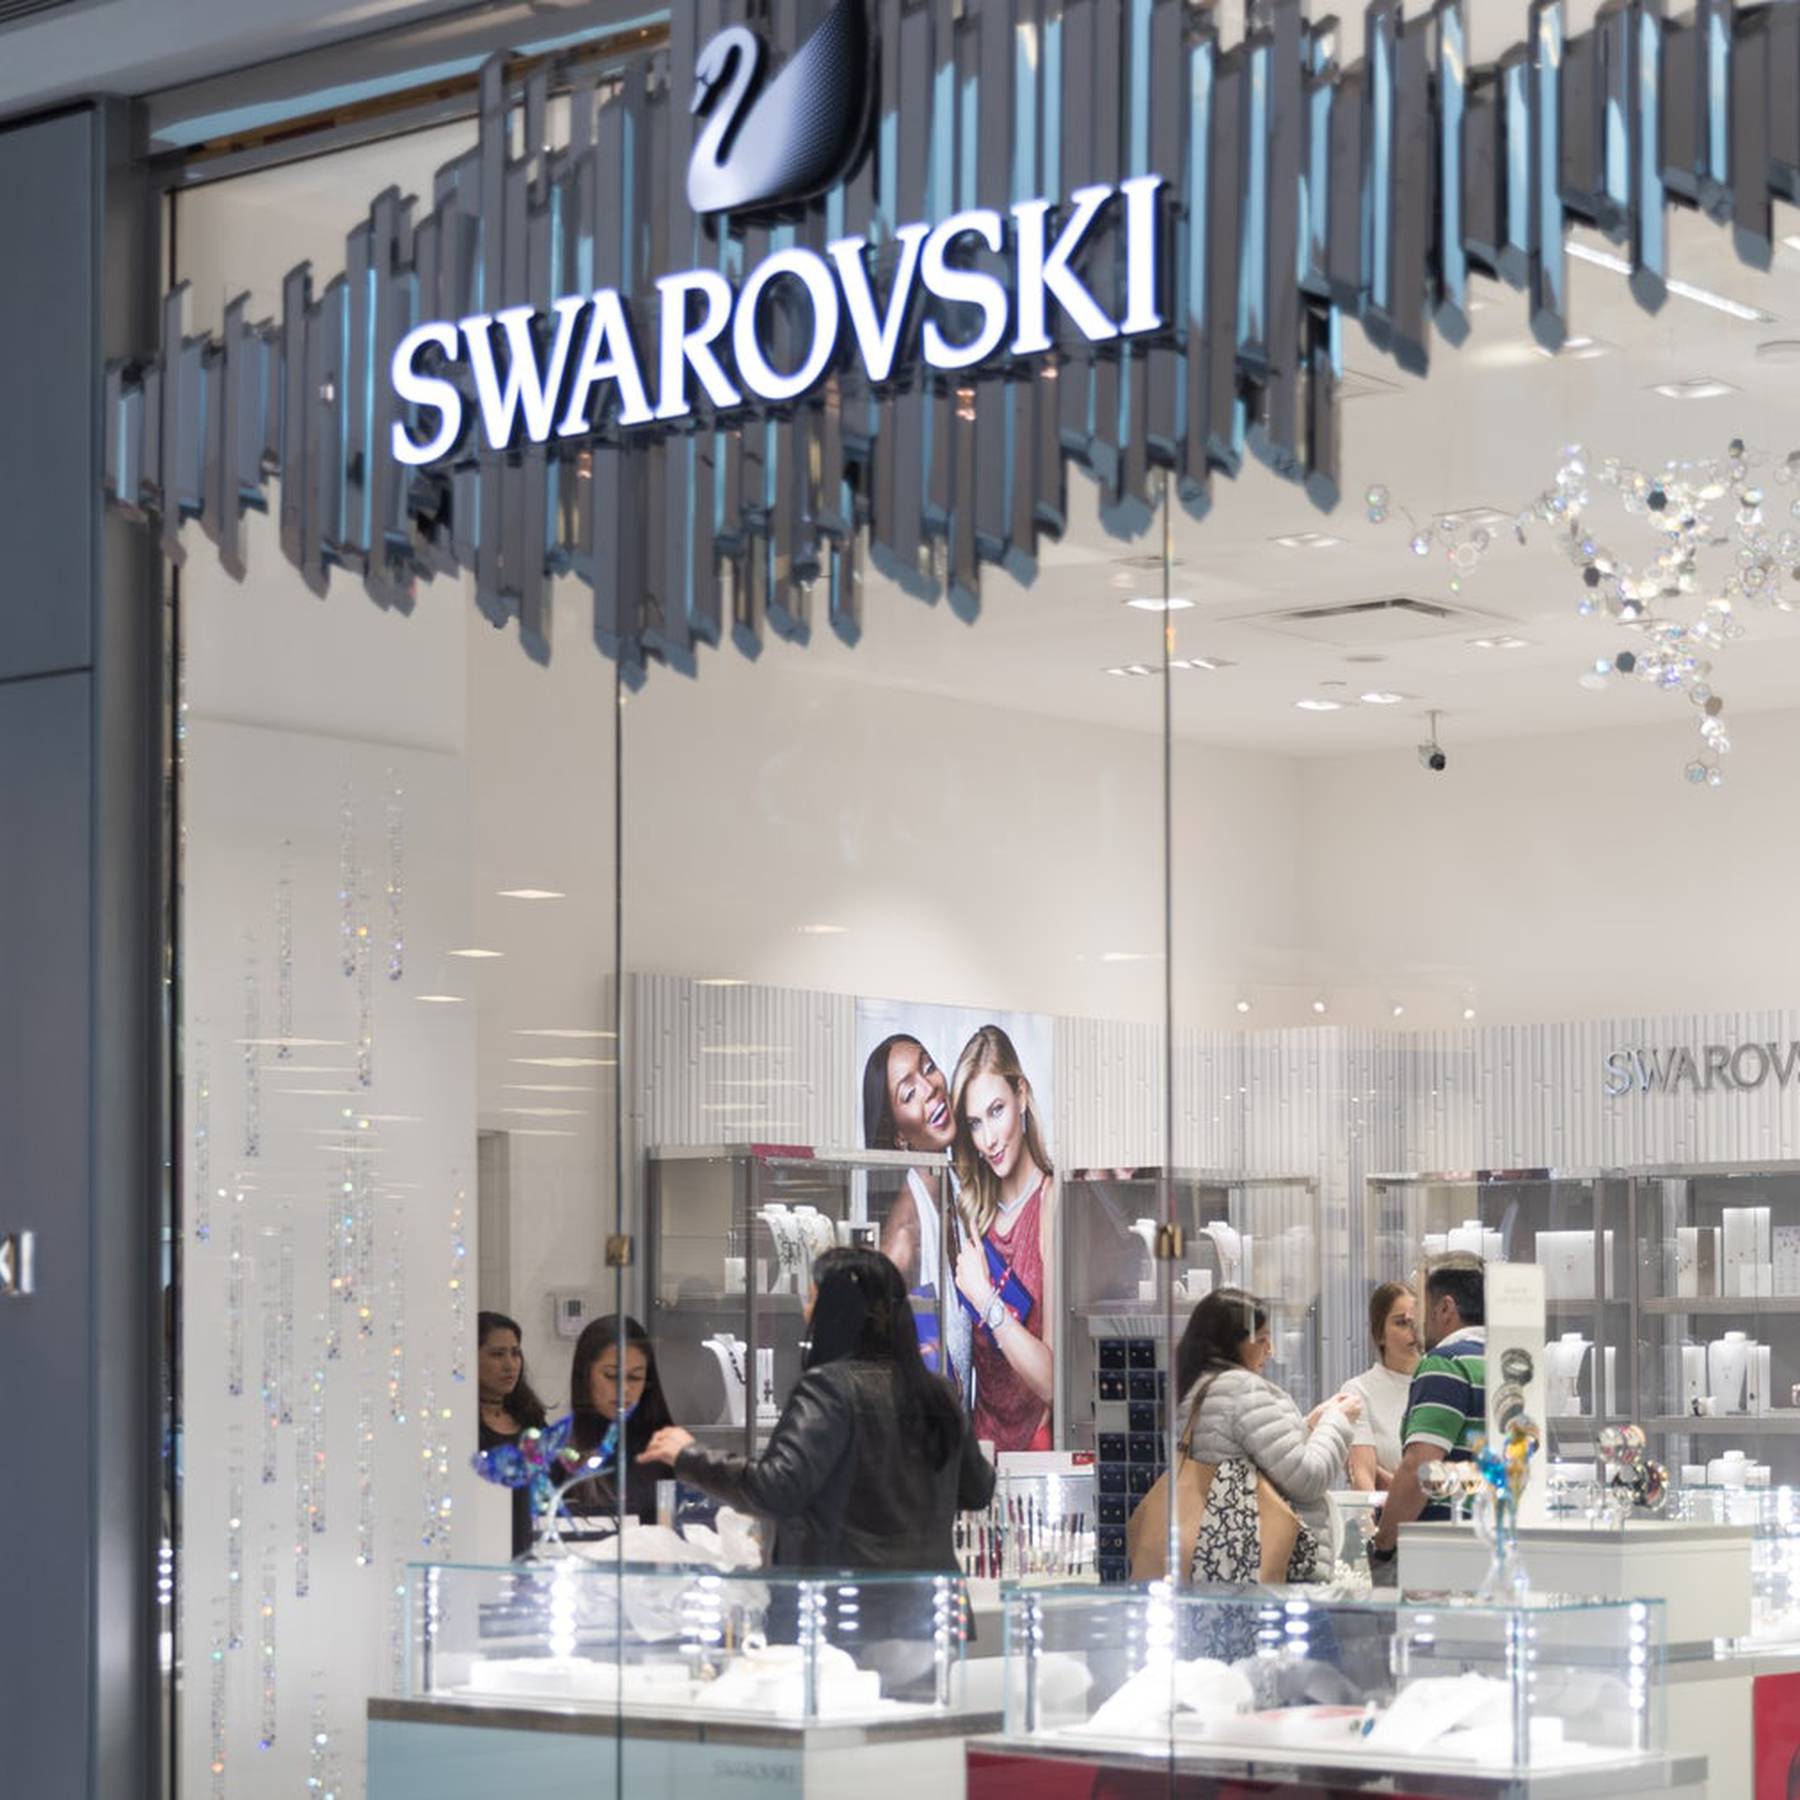 Gevoelig Beschietingen baard Swarovski Shareholders Approve 6,000 Job Cuts | BoF